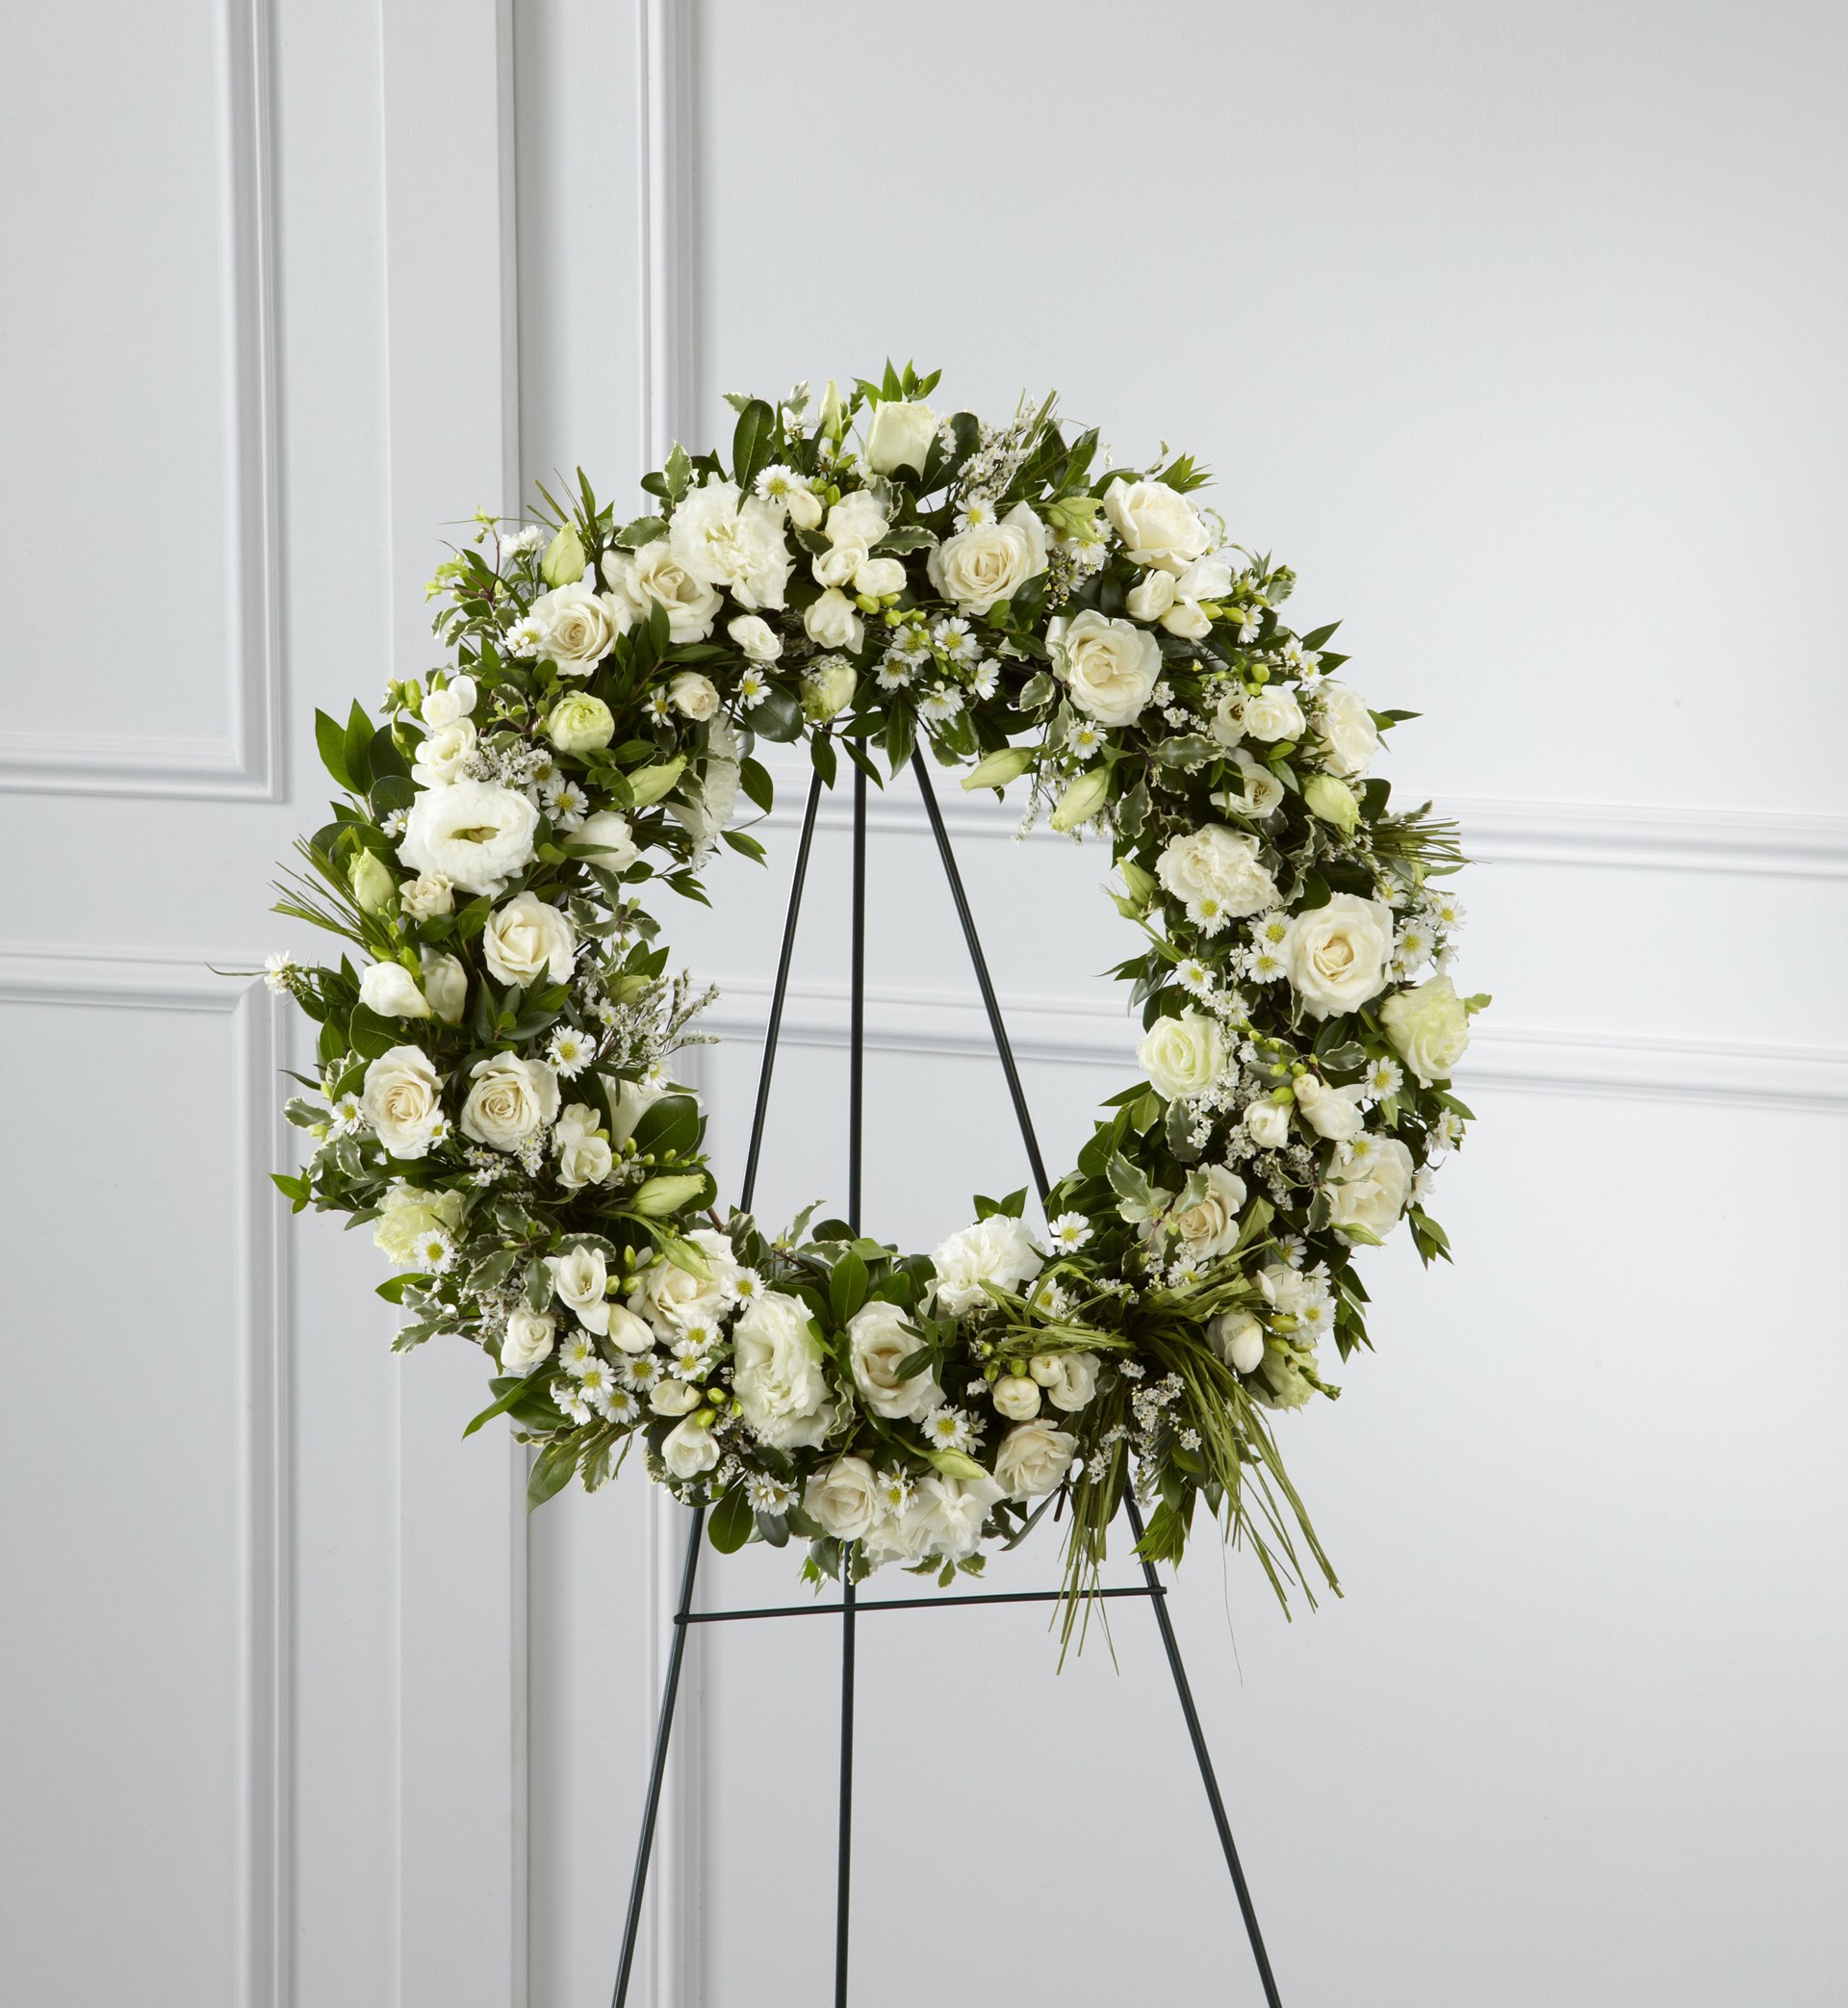 The FTD Splendor Wreath